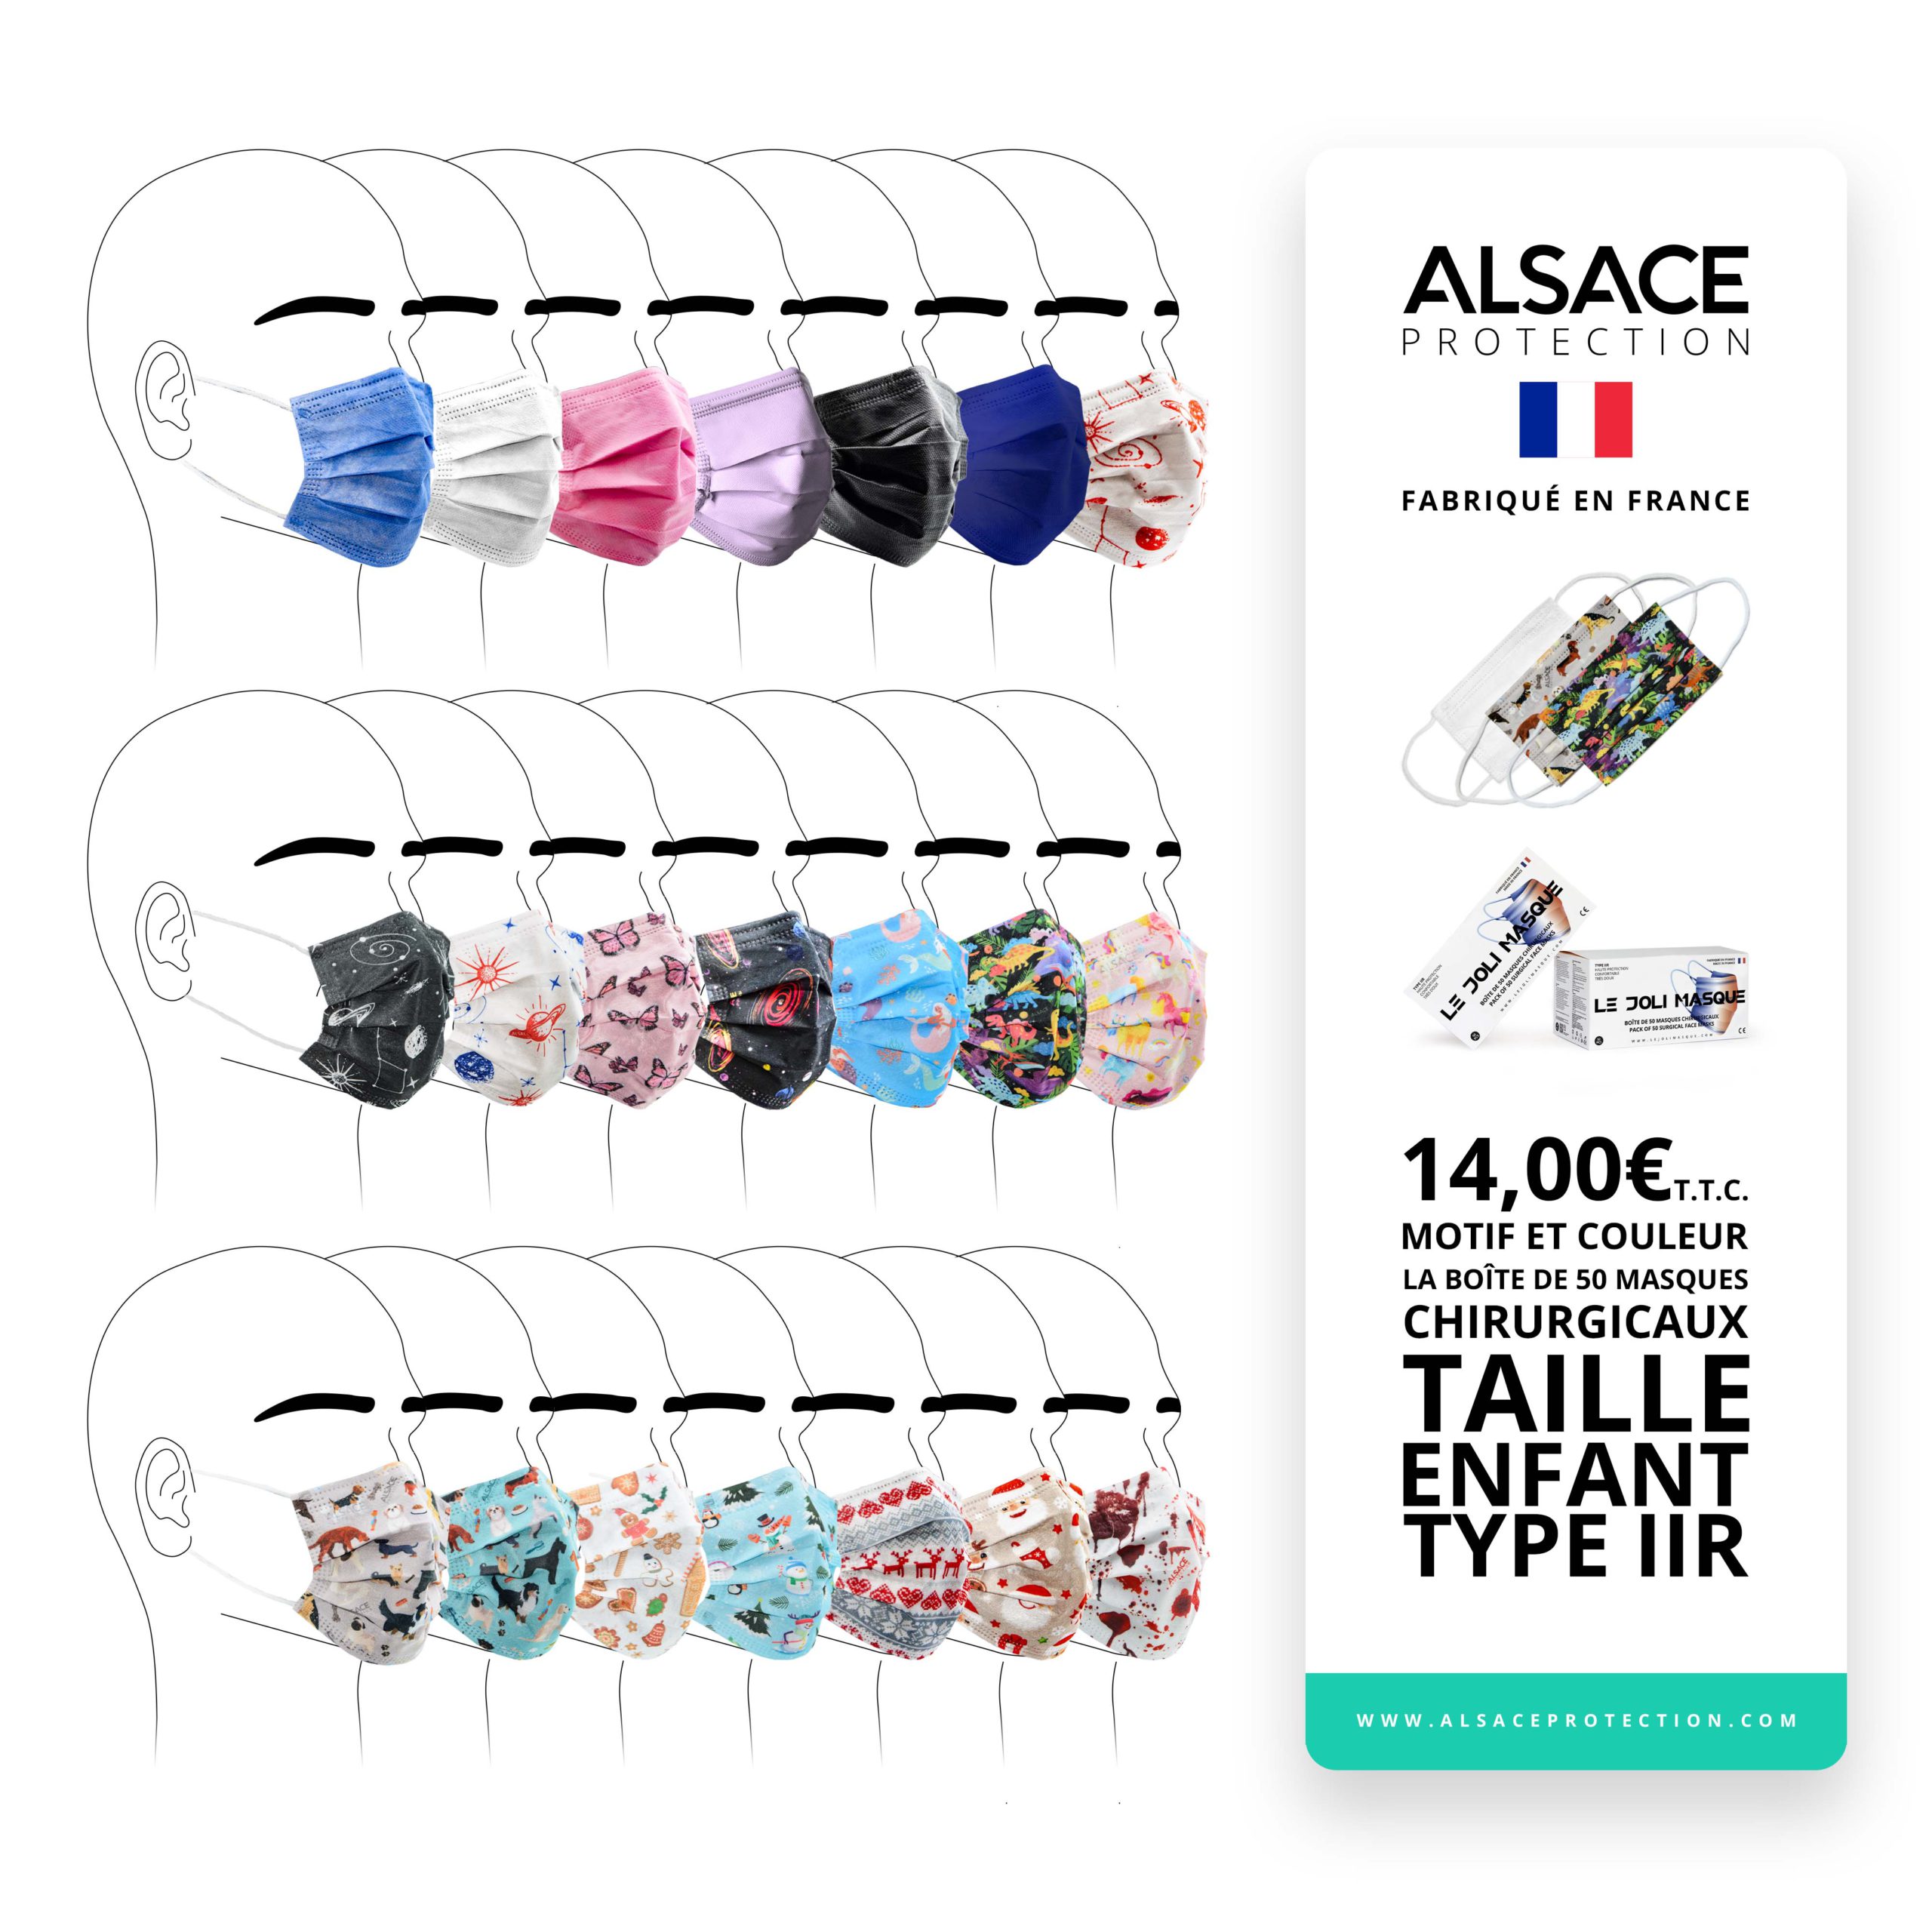 Alsace Protection  Boîte de 50 Masques Chirurgicaux - Edition Limitée -  Fabriqué en France - Type IIR